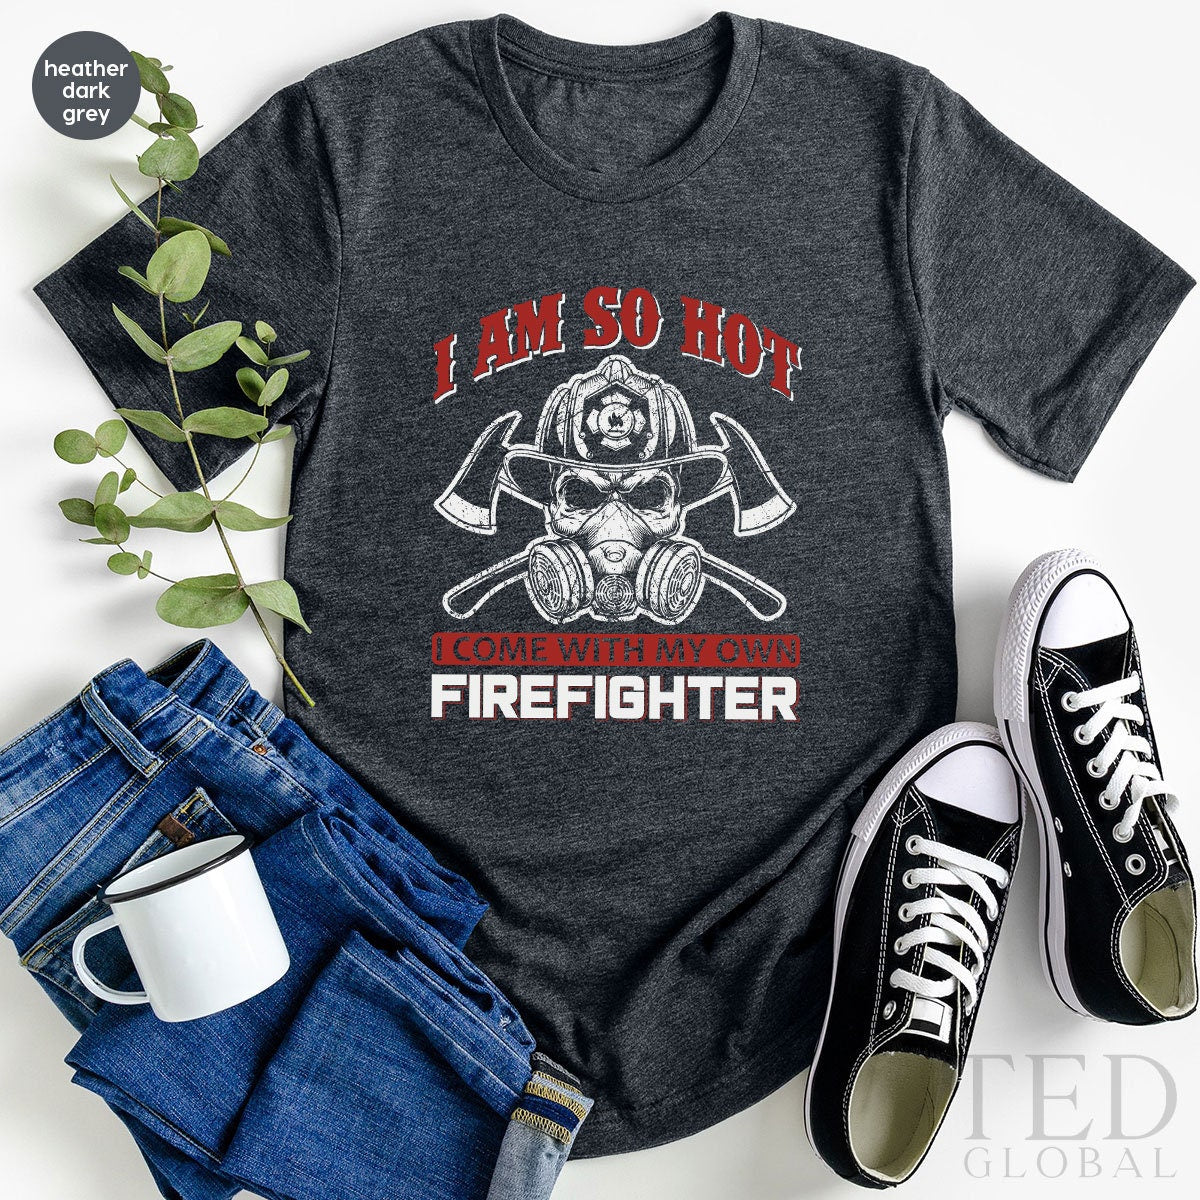 Firefighter Shirt, Fire Department T-Shirt, Fireman T Shirt, Firefighter Shirts, First Responder Tee, Fireman Life T-Shirt, Gift For Fireman - Fastdeliverytees.com